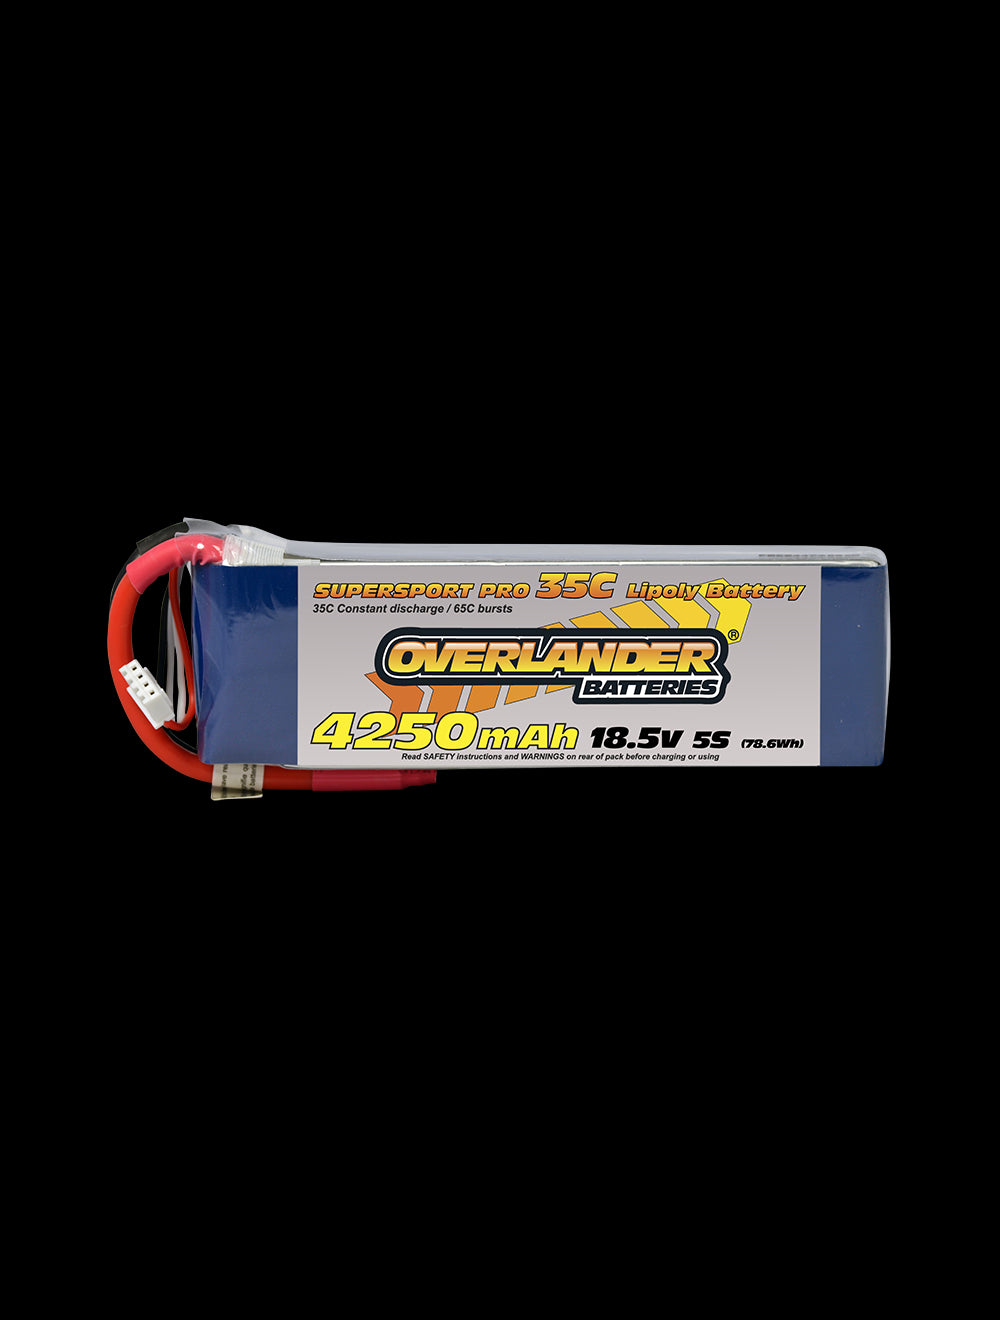 Overlander 4250mAh 18.5V 5S 35C Supersport Pro LiPo Battery - EC3 Connector 2477